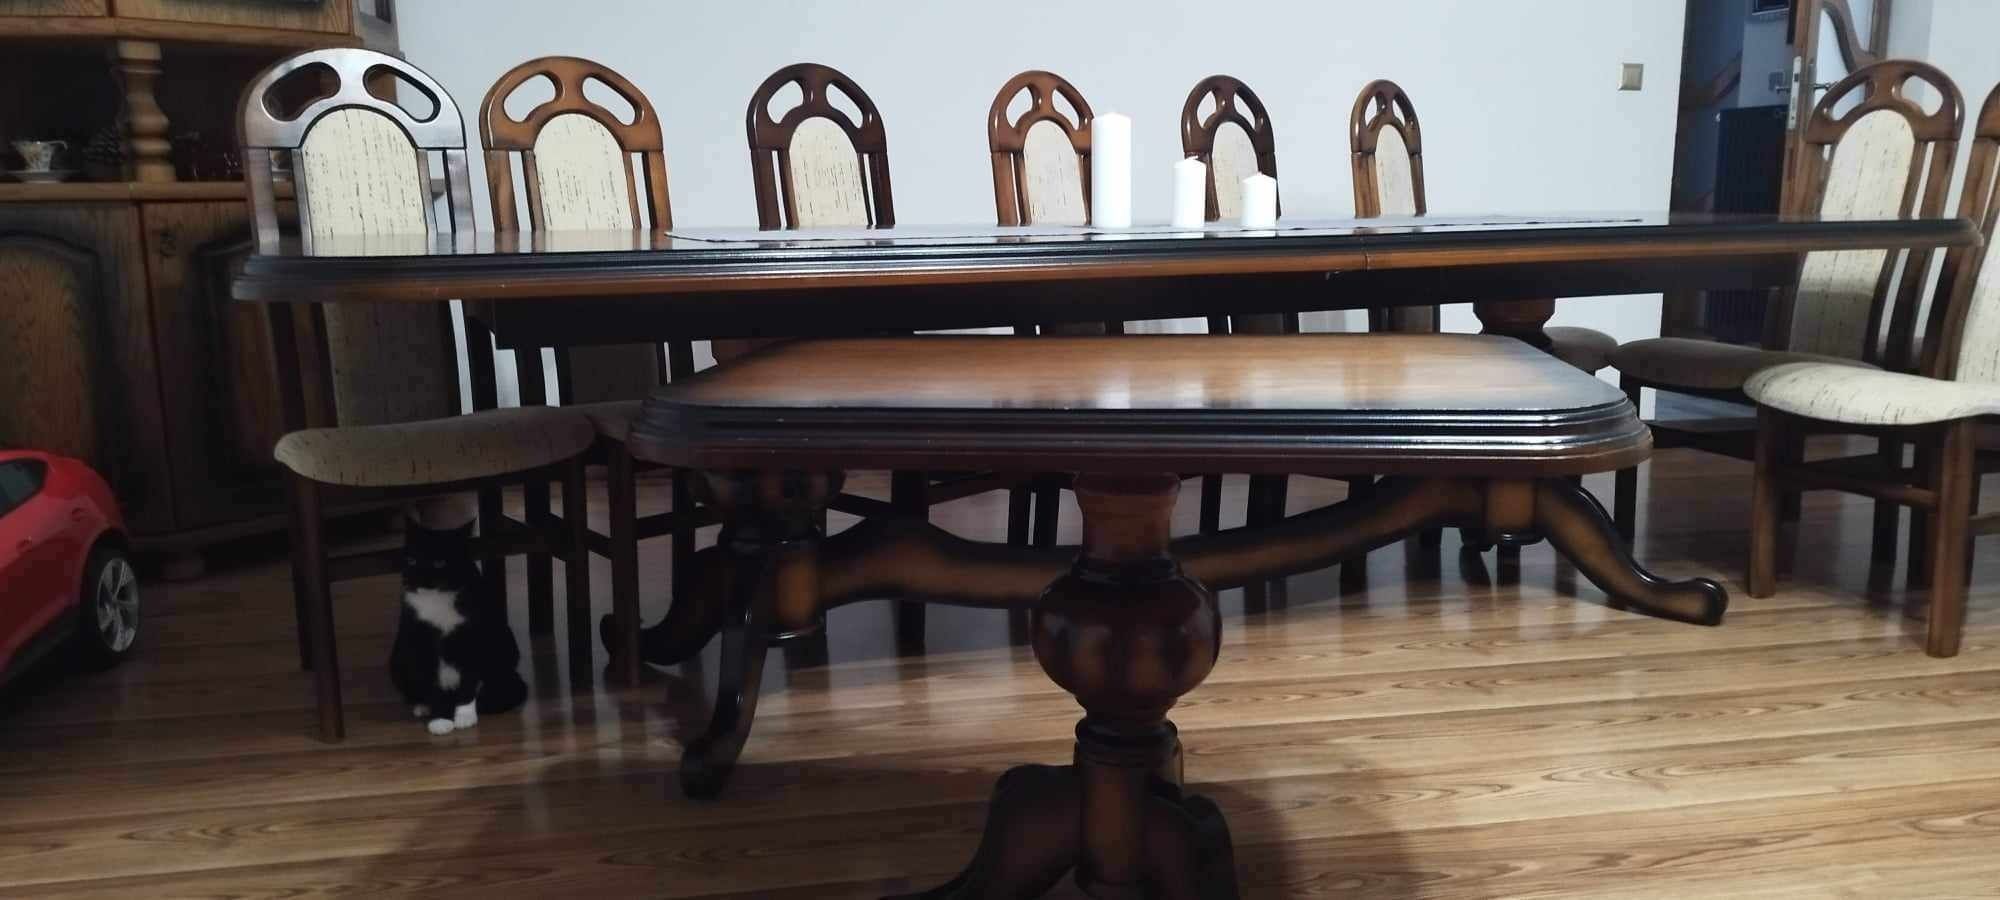 Stół stylowy 3 metry długi